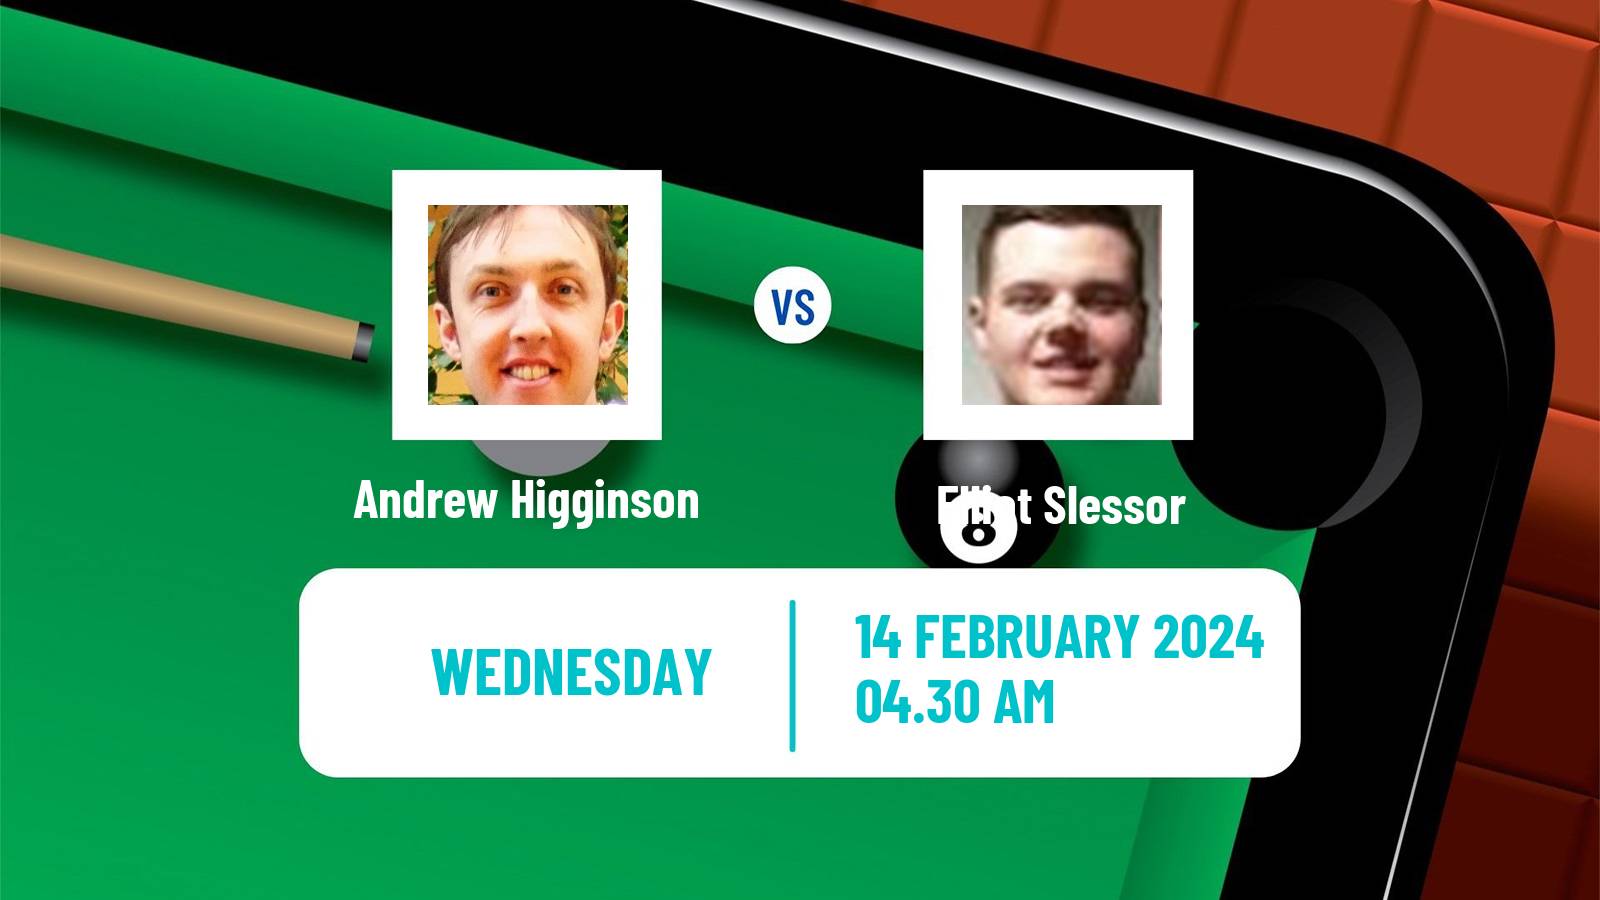 Snooker Welsh Open Andrew Higginson - Elliot Slessor